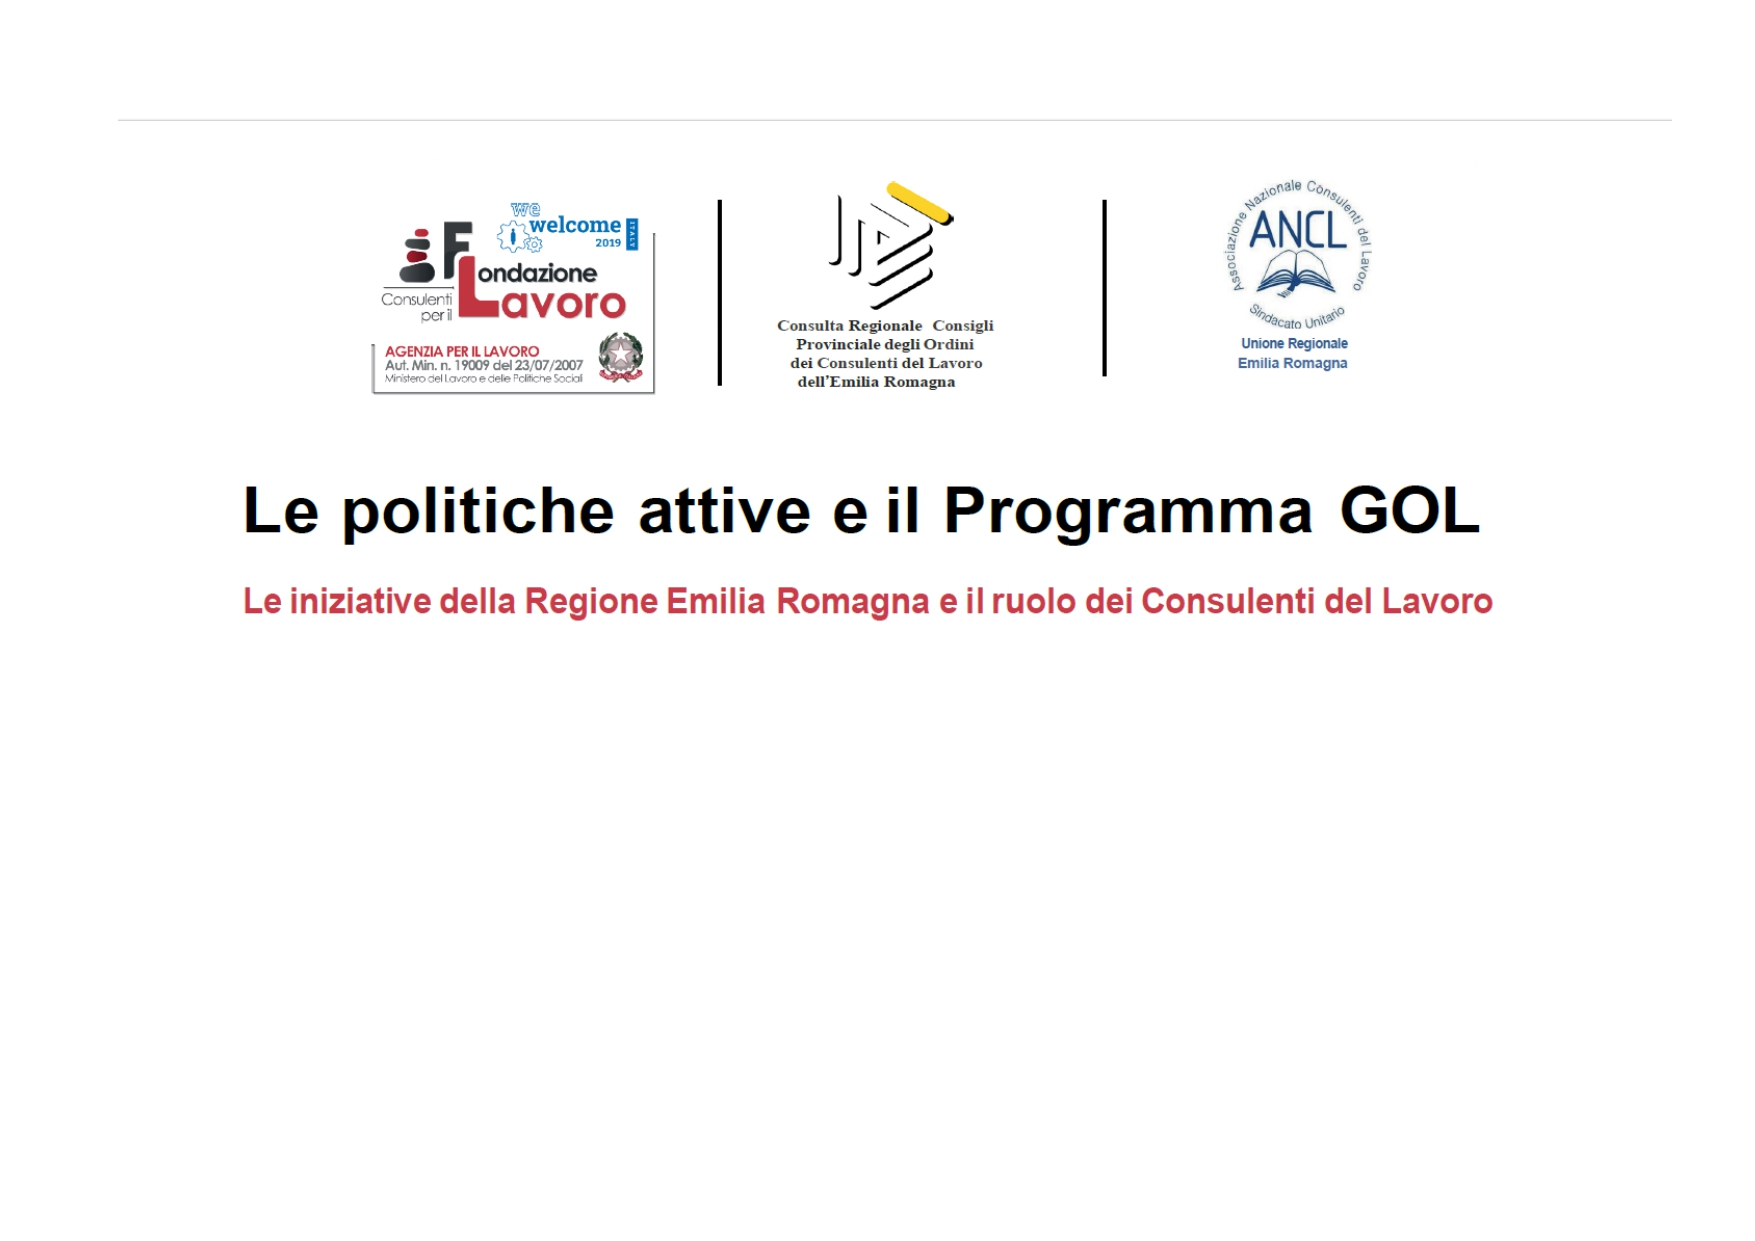 Convegno: Le politiche attive e il Programma GOL. Le iniziative della Regione Emilia Romagna e il ruolo dei Consulenti del Lavoro Bologna 27 aprile 2022 15:00/18:00